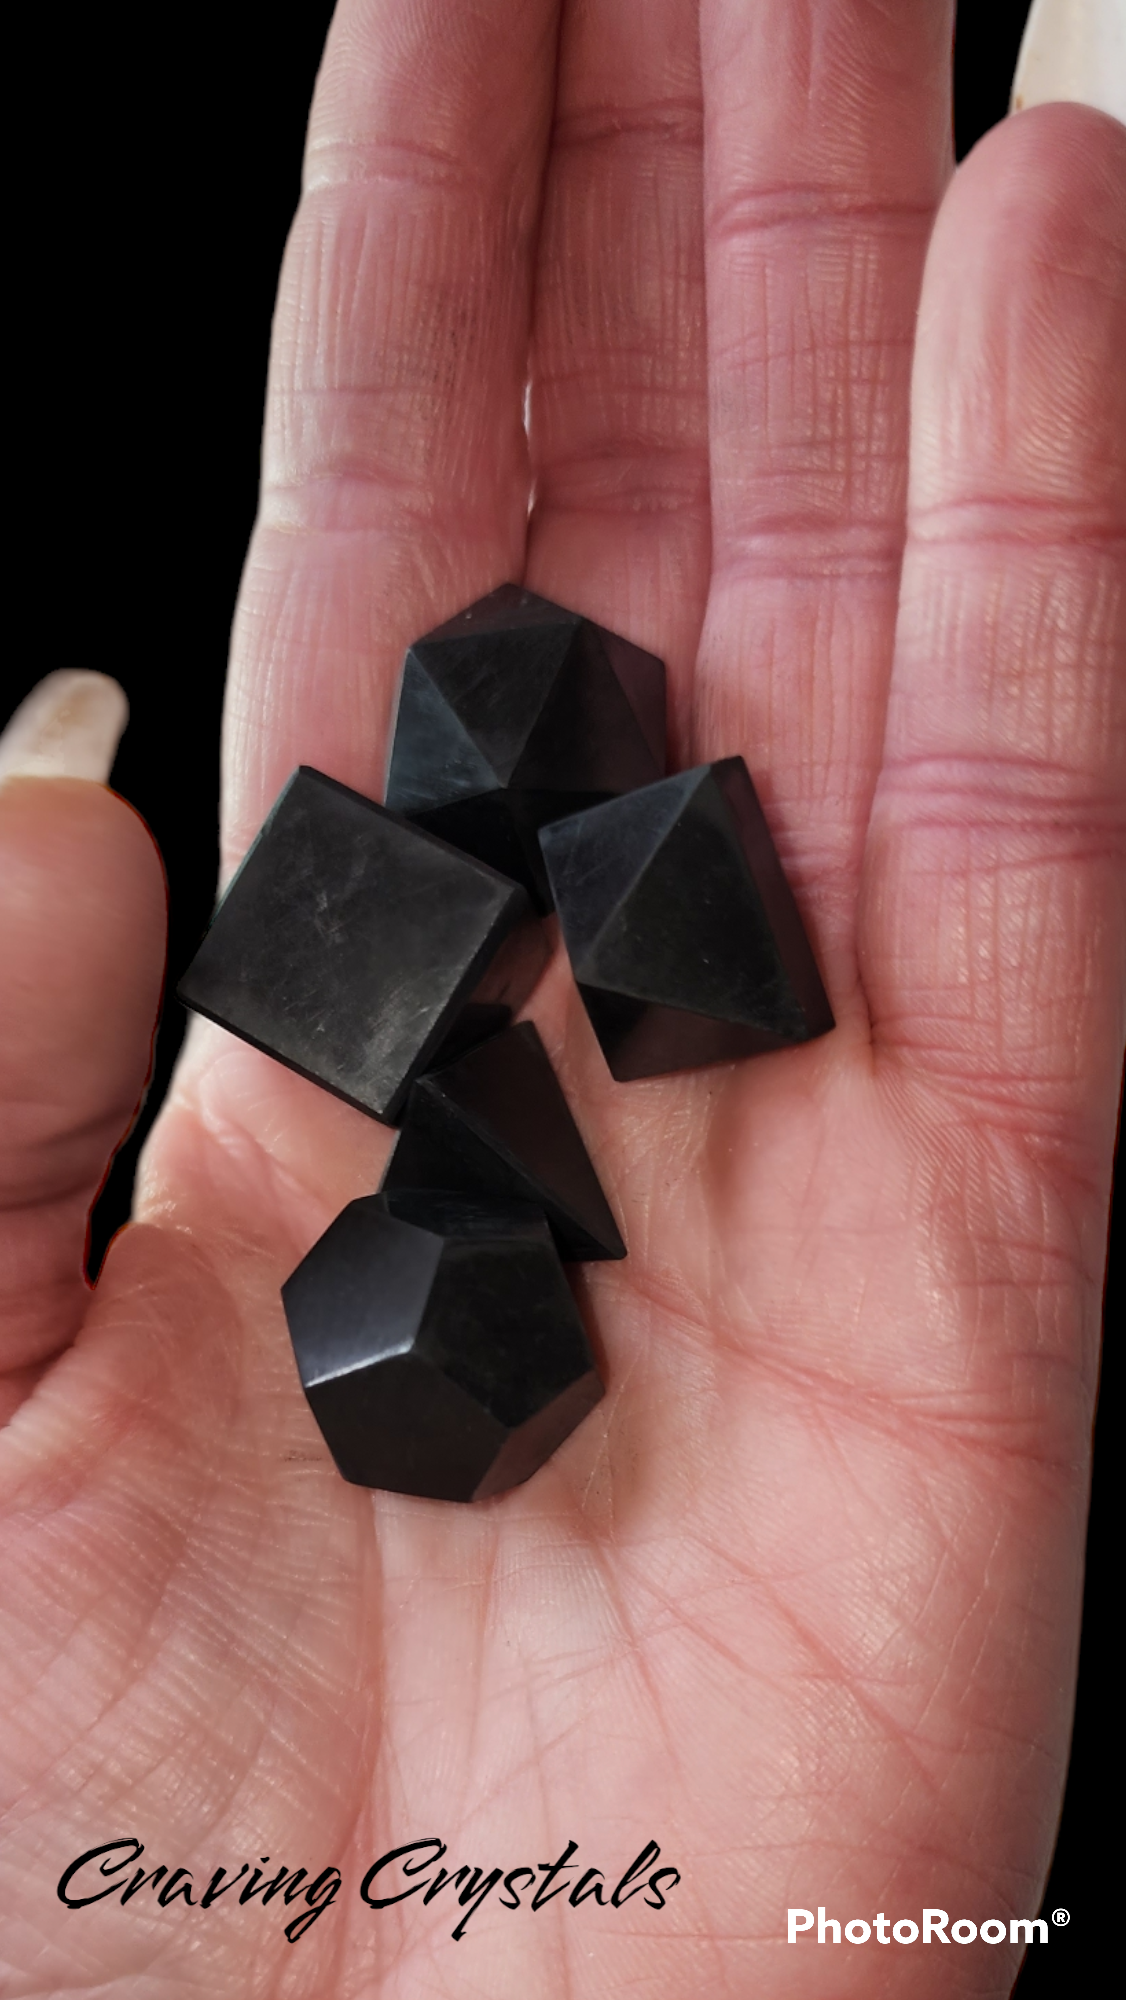 Black Tourmaline 5pc Platonic Solid Geometry Set